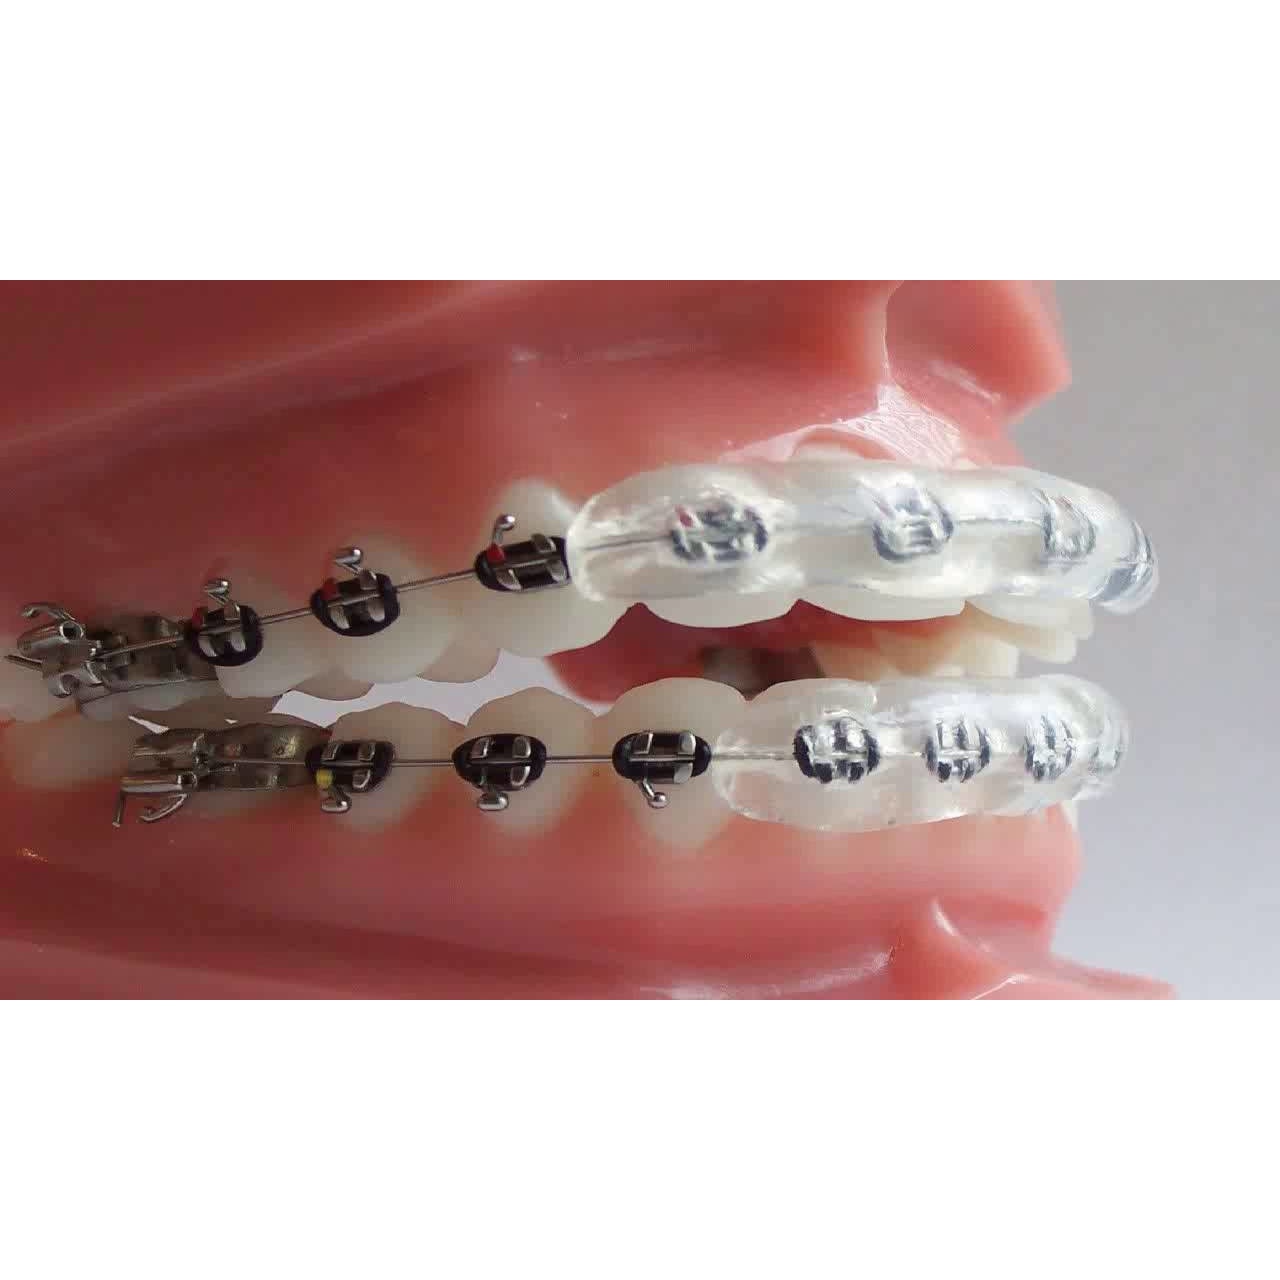 aparat dentar fals pret - www.ggxdtelecom.com 